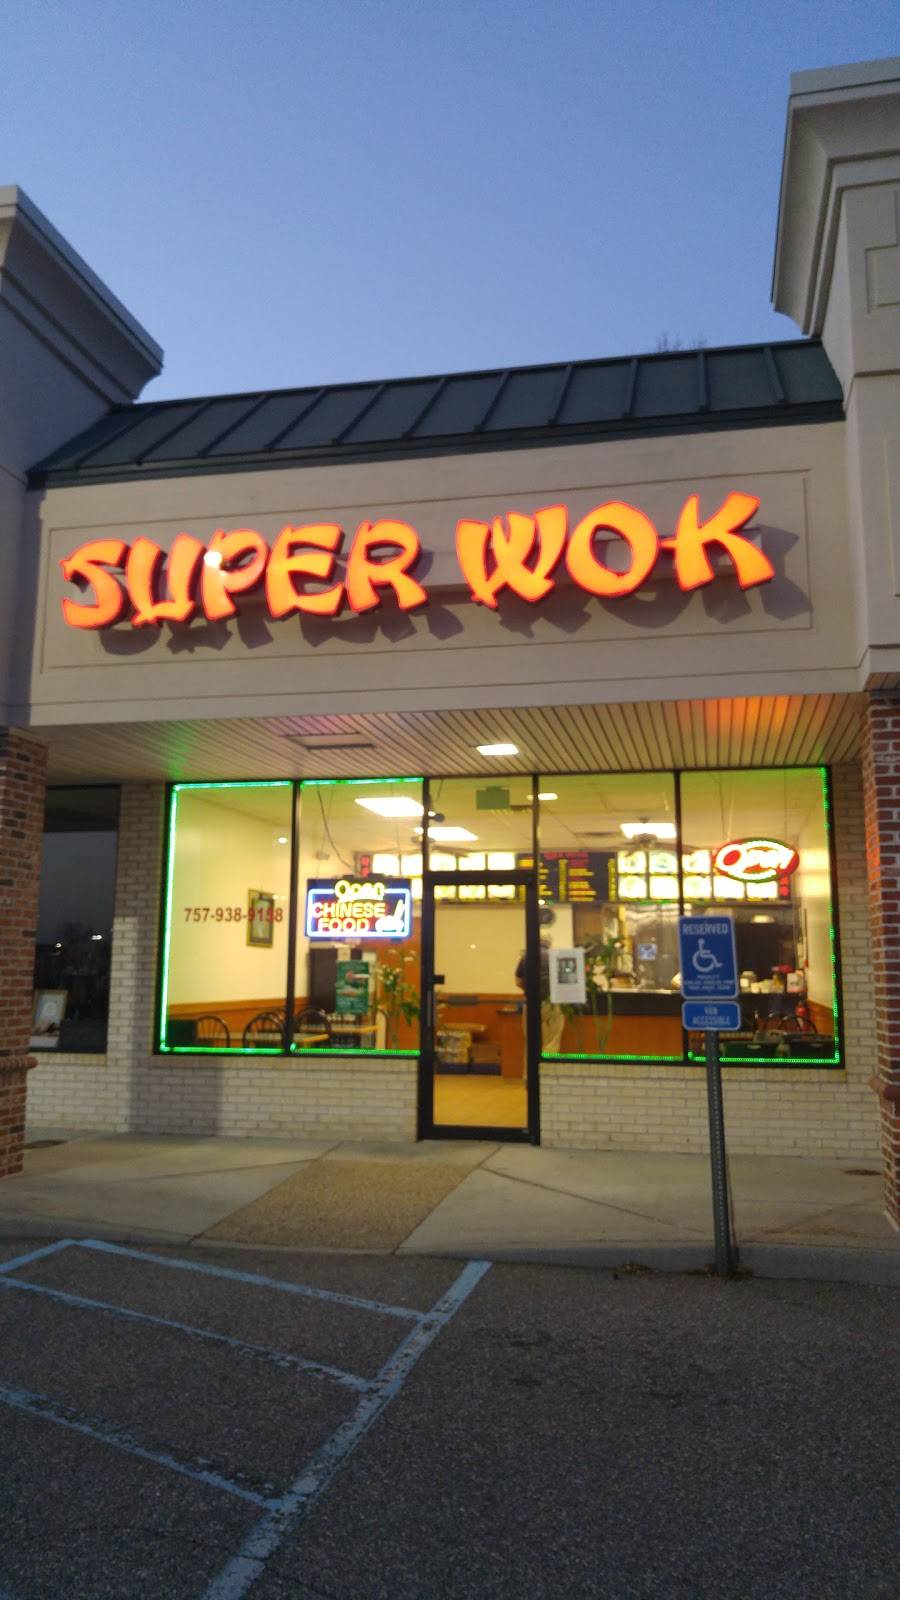 Super Wok | restaurant | 5312 Kemps River Dr # 103, Virginia Beach, VA 23464, USA | 7579389158 OR +1 757-938-9158